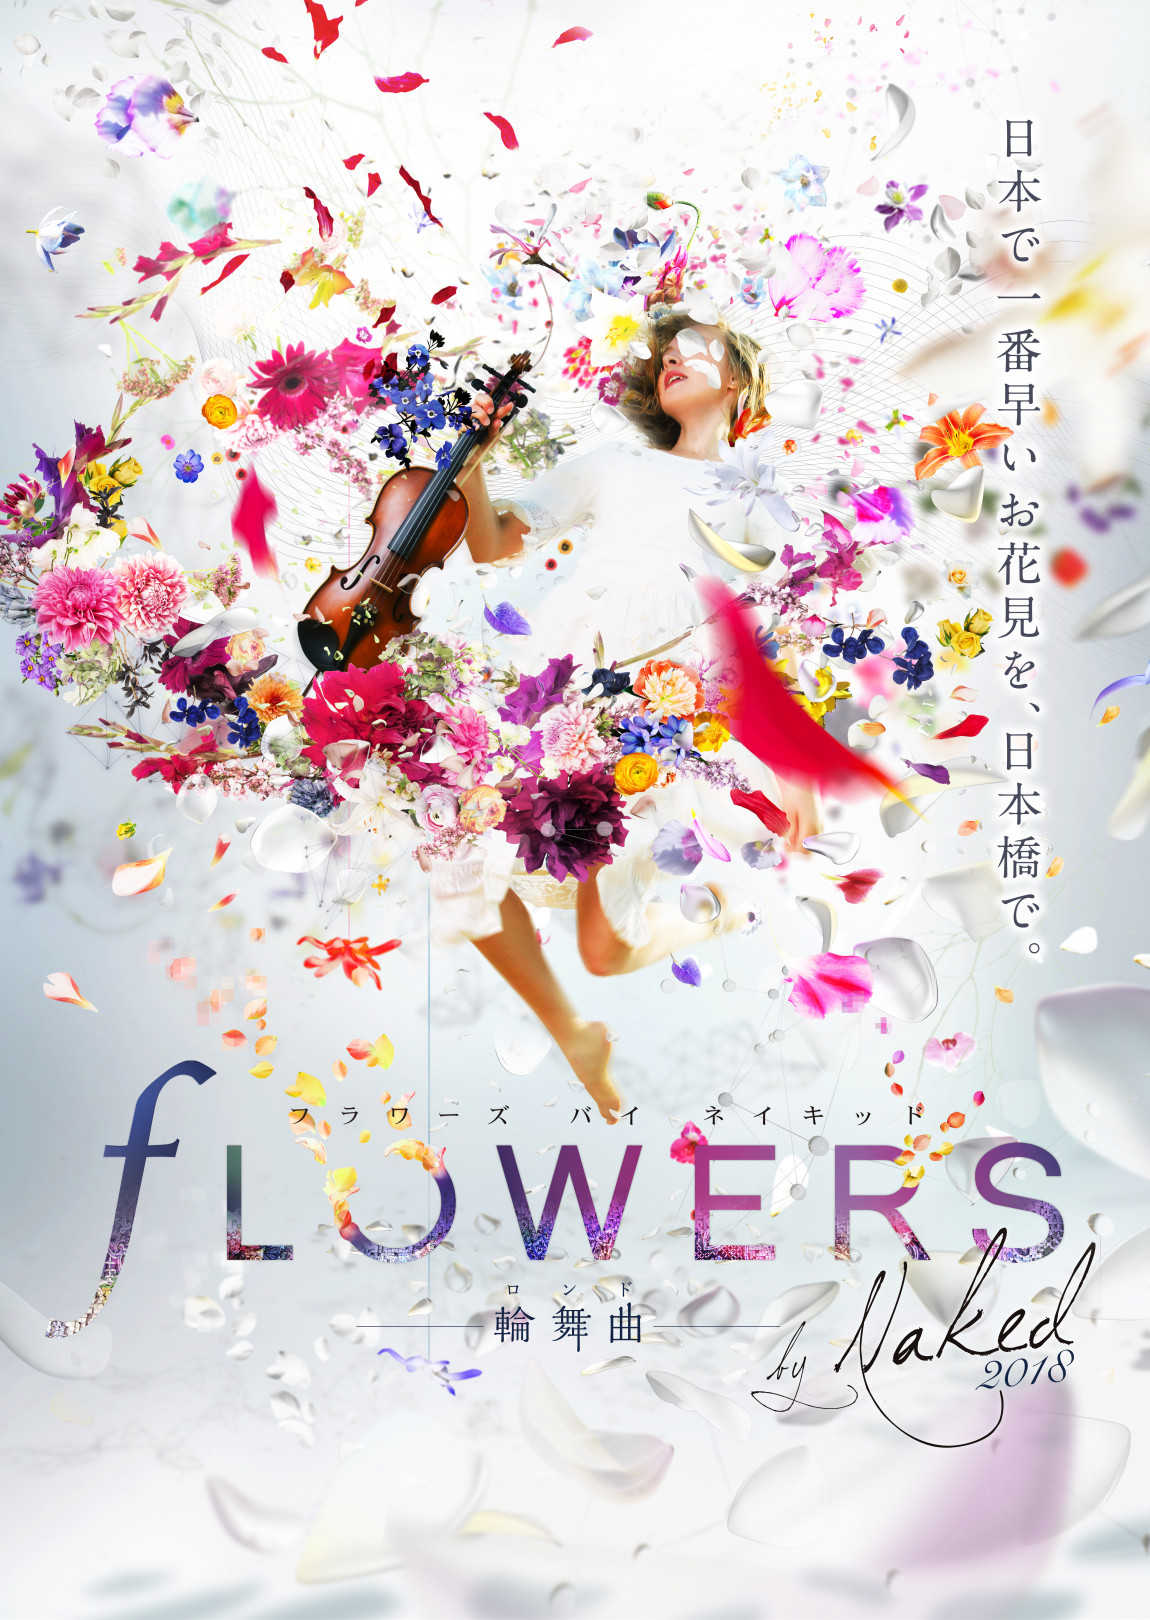 花の体験型アート展「FLOWERS by NAKED 2018-輪舞曲-」が、2018年1月23日から2月26日まで開催。